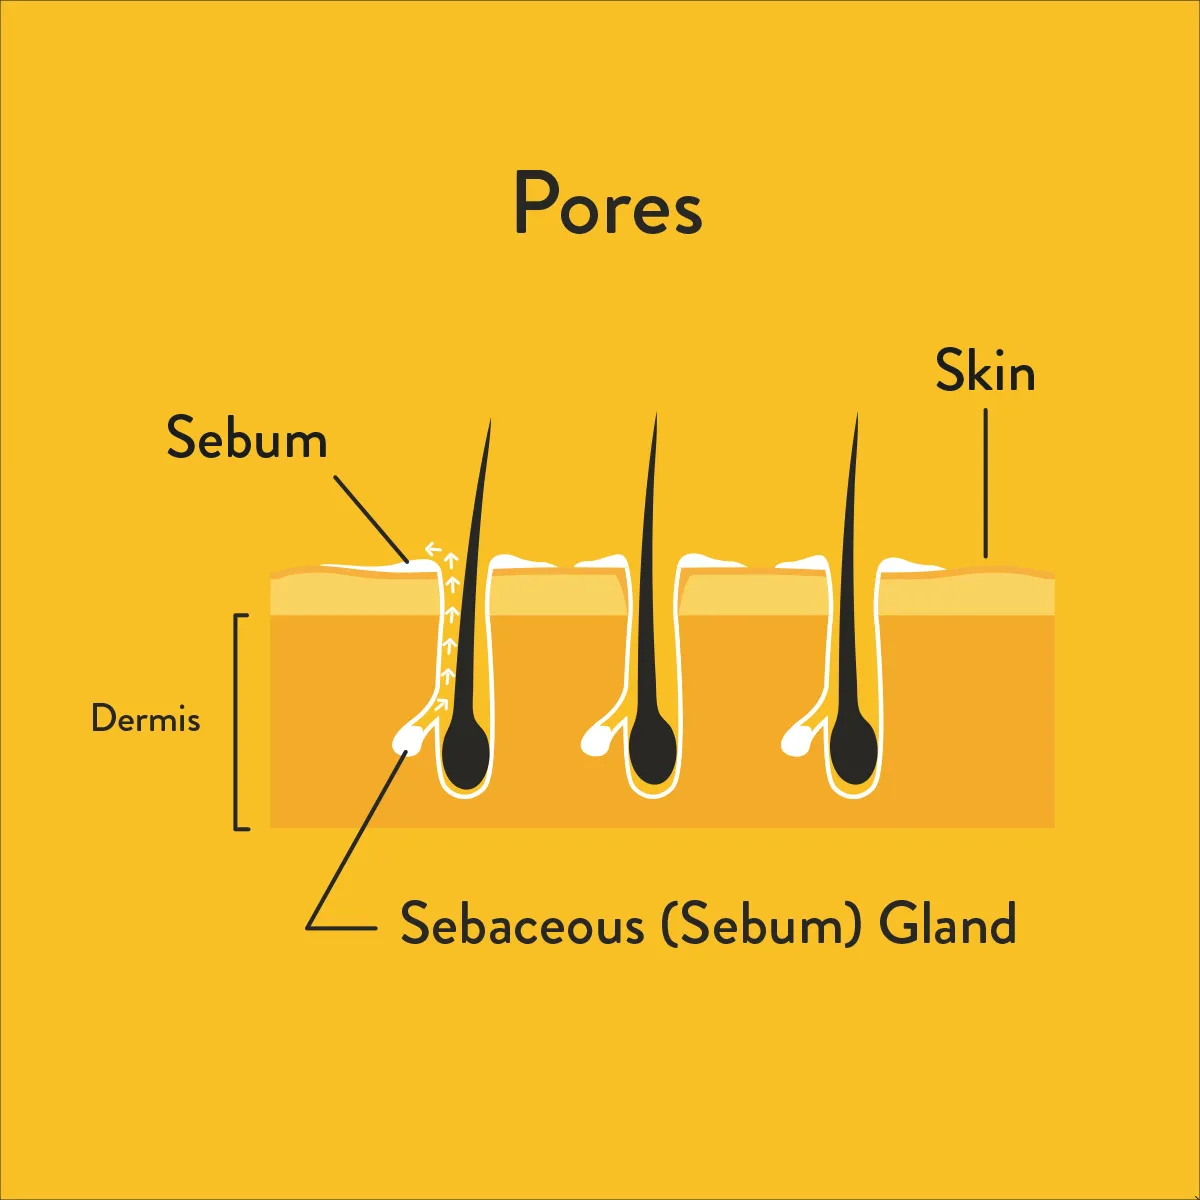 Skin pores informative diagram